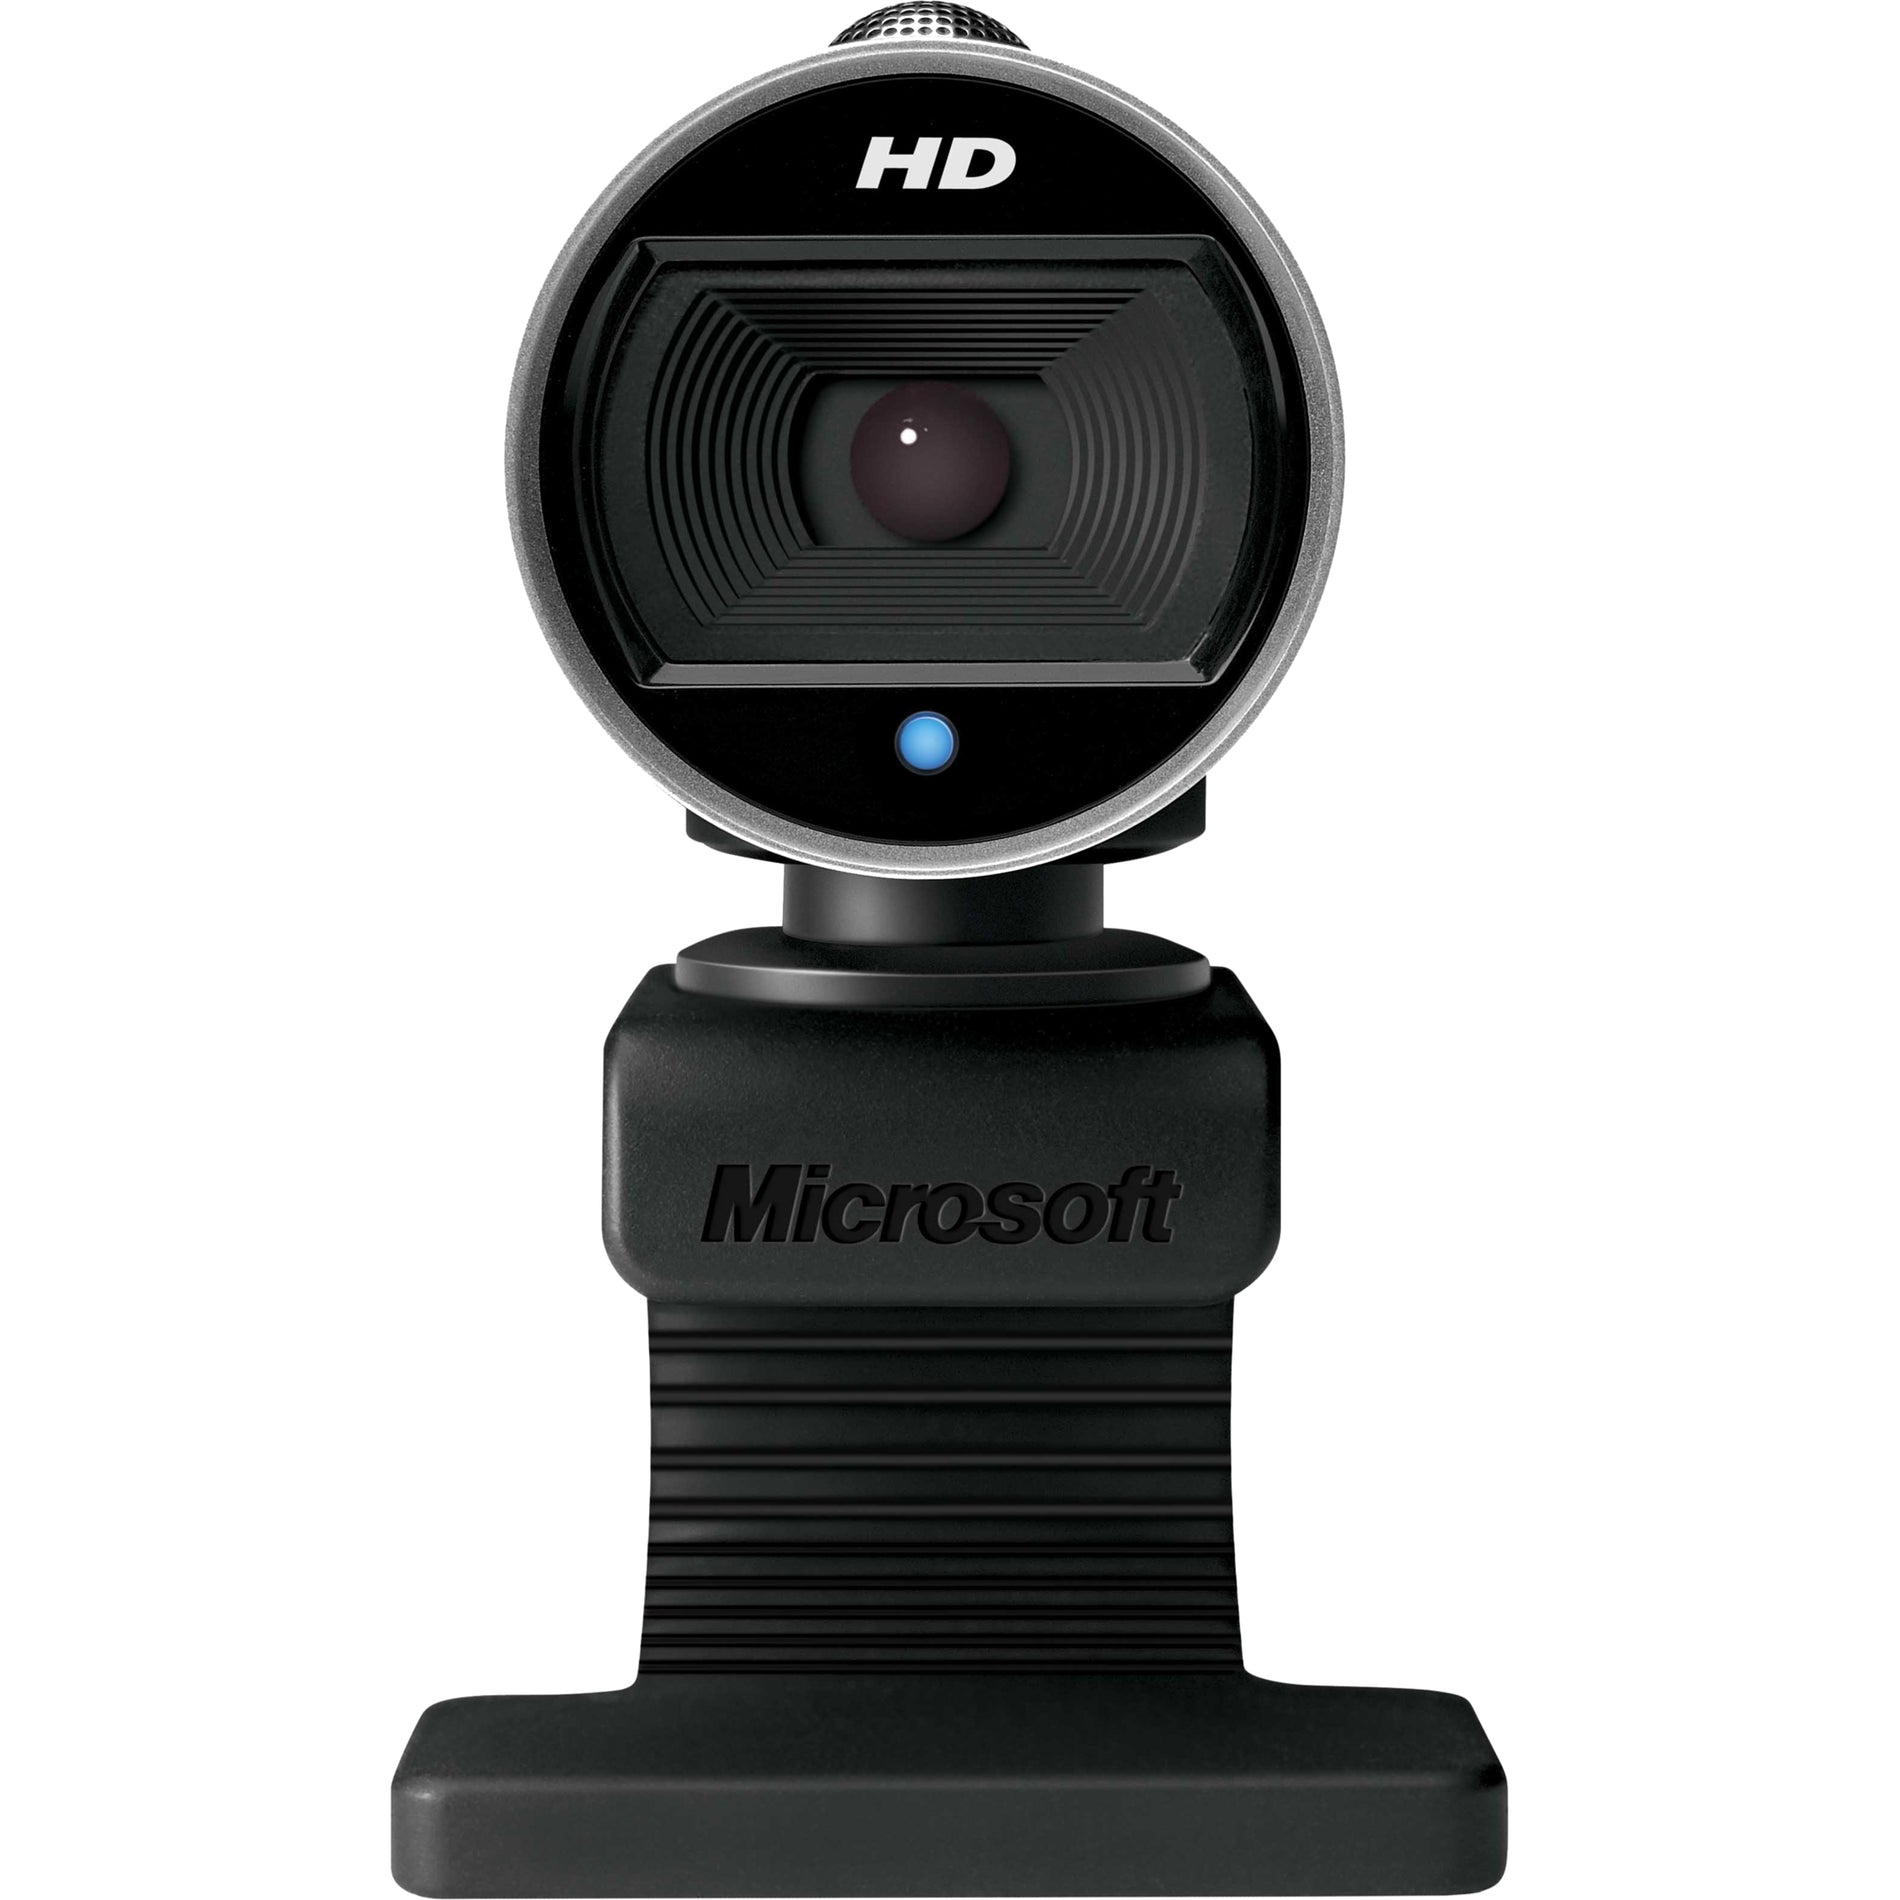 Microsoft LifeCam Cinema Webcam - High Definition Video, Auto-Focus [Discontinued]